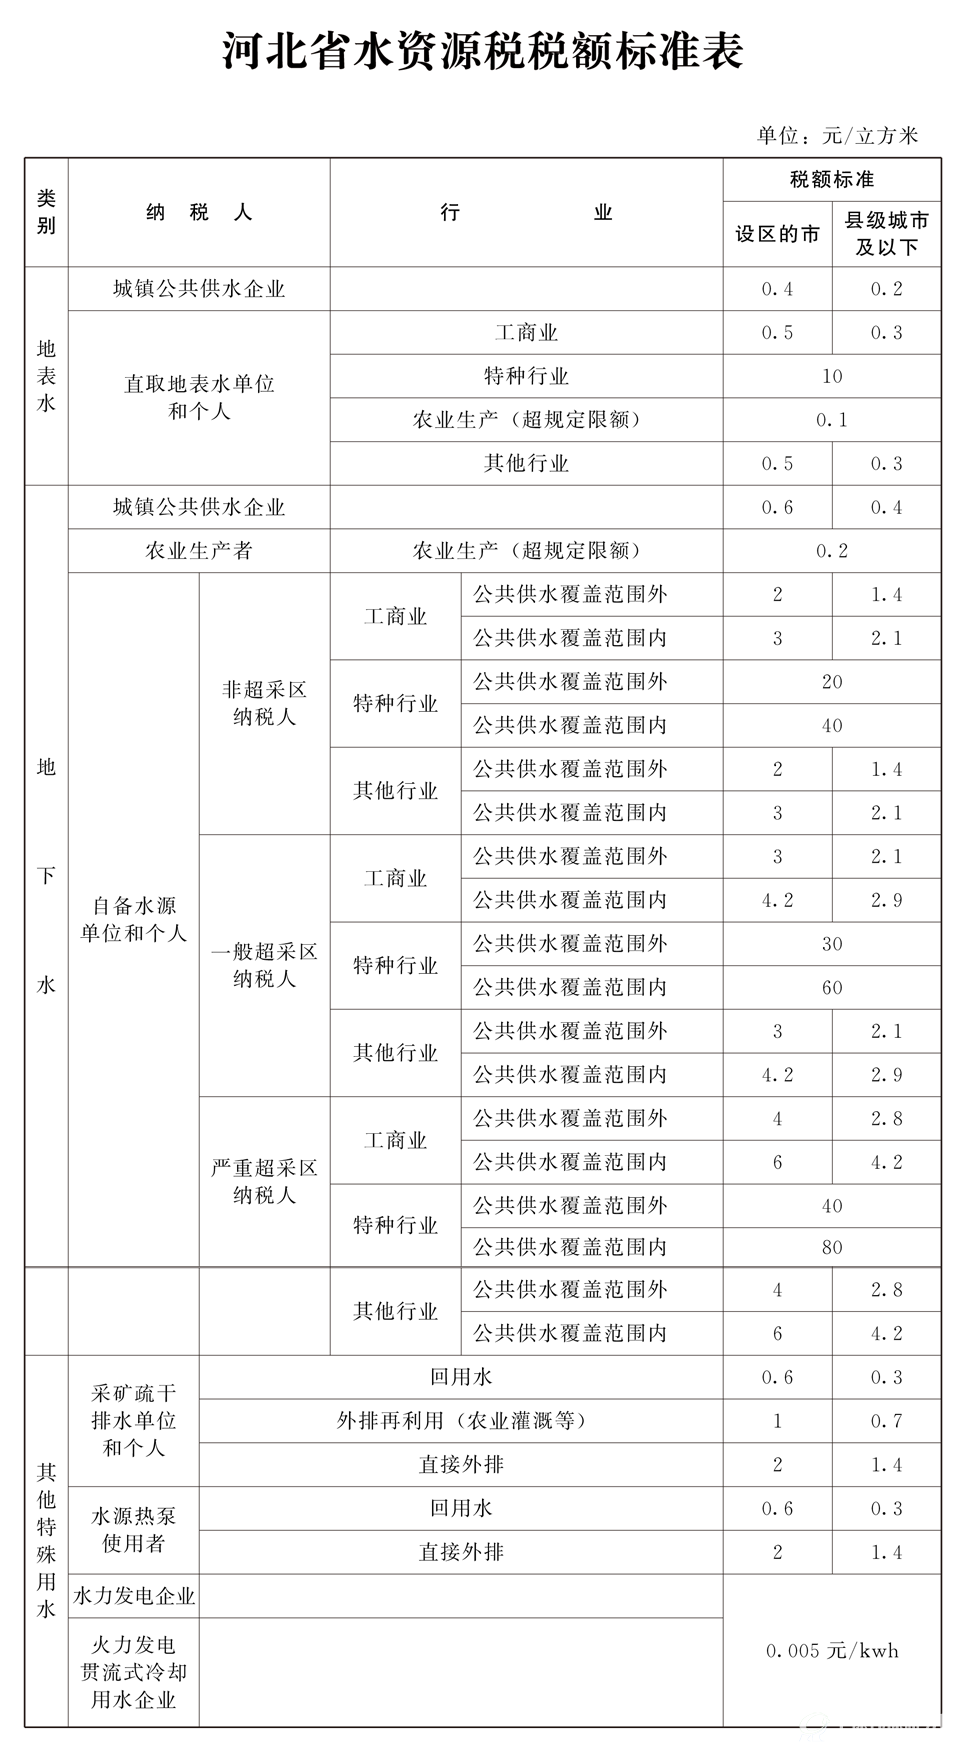 河北省水资源税税额标准表